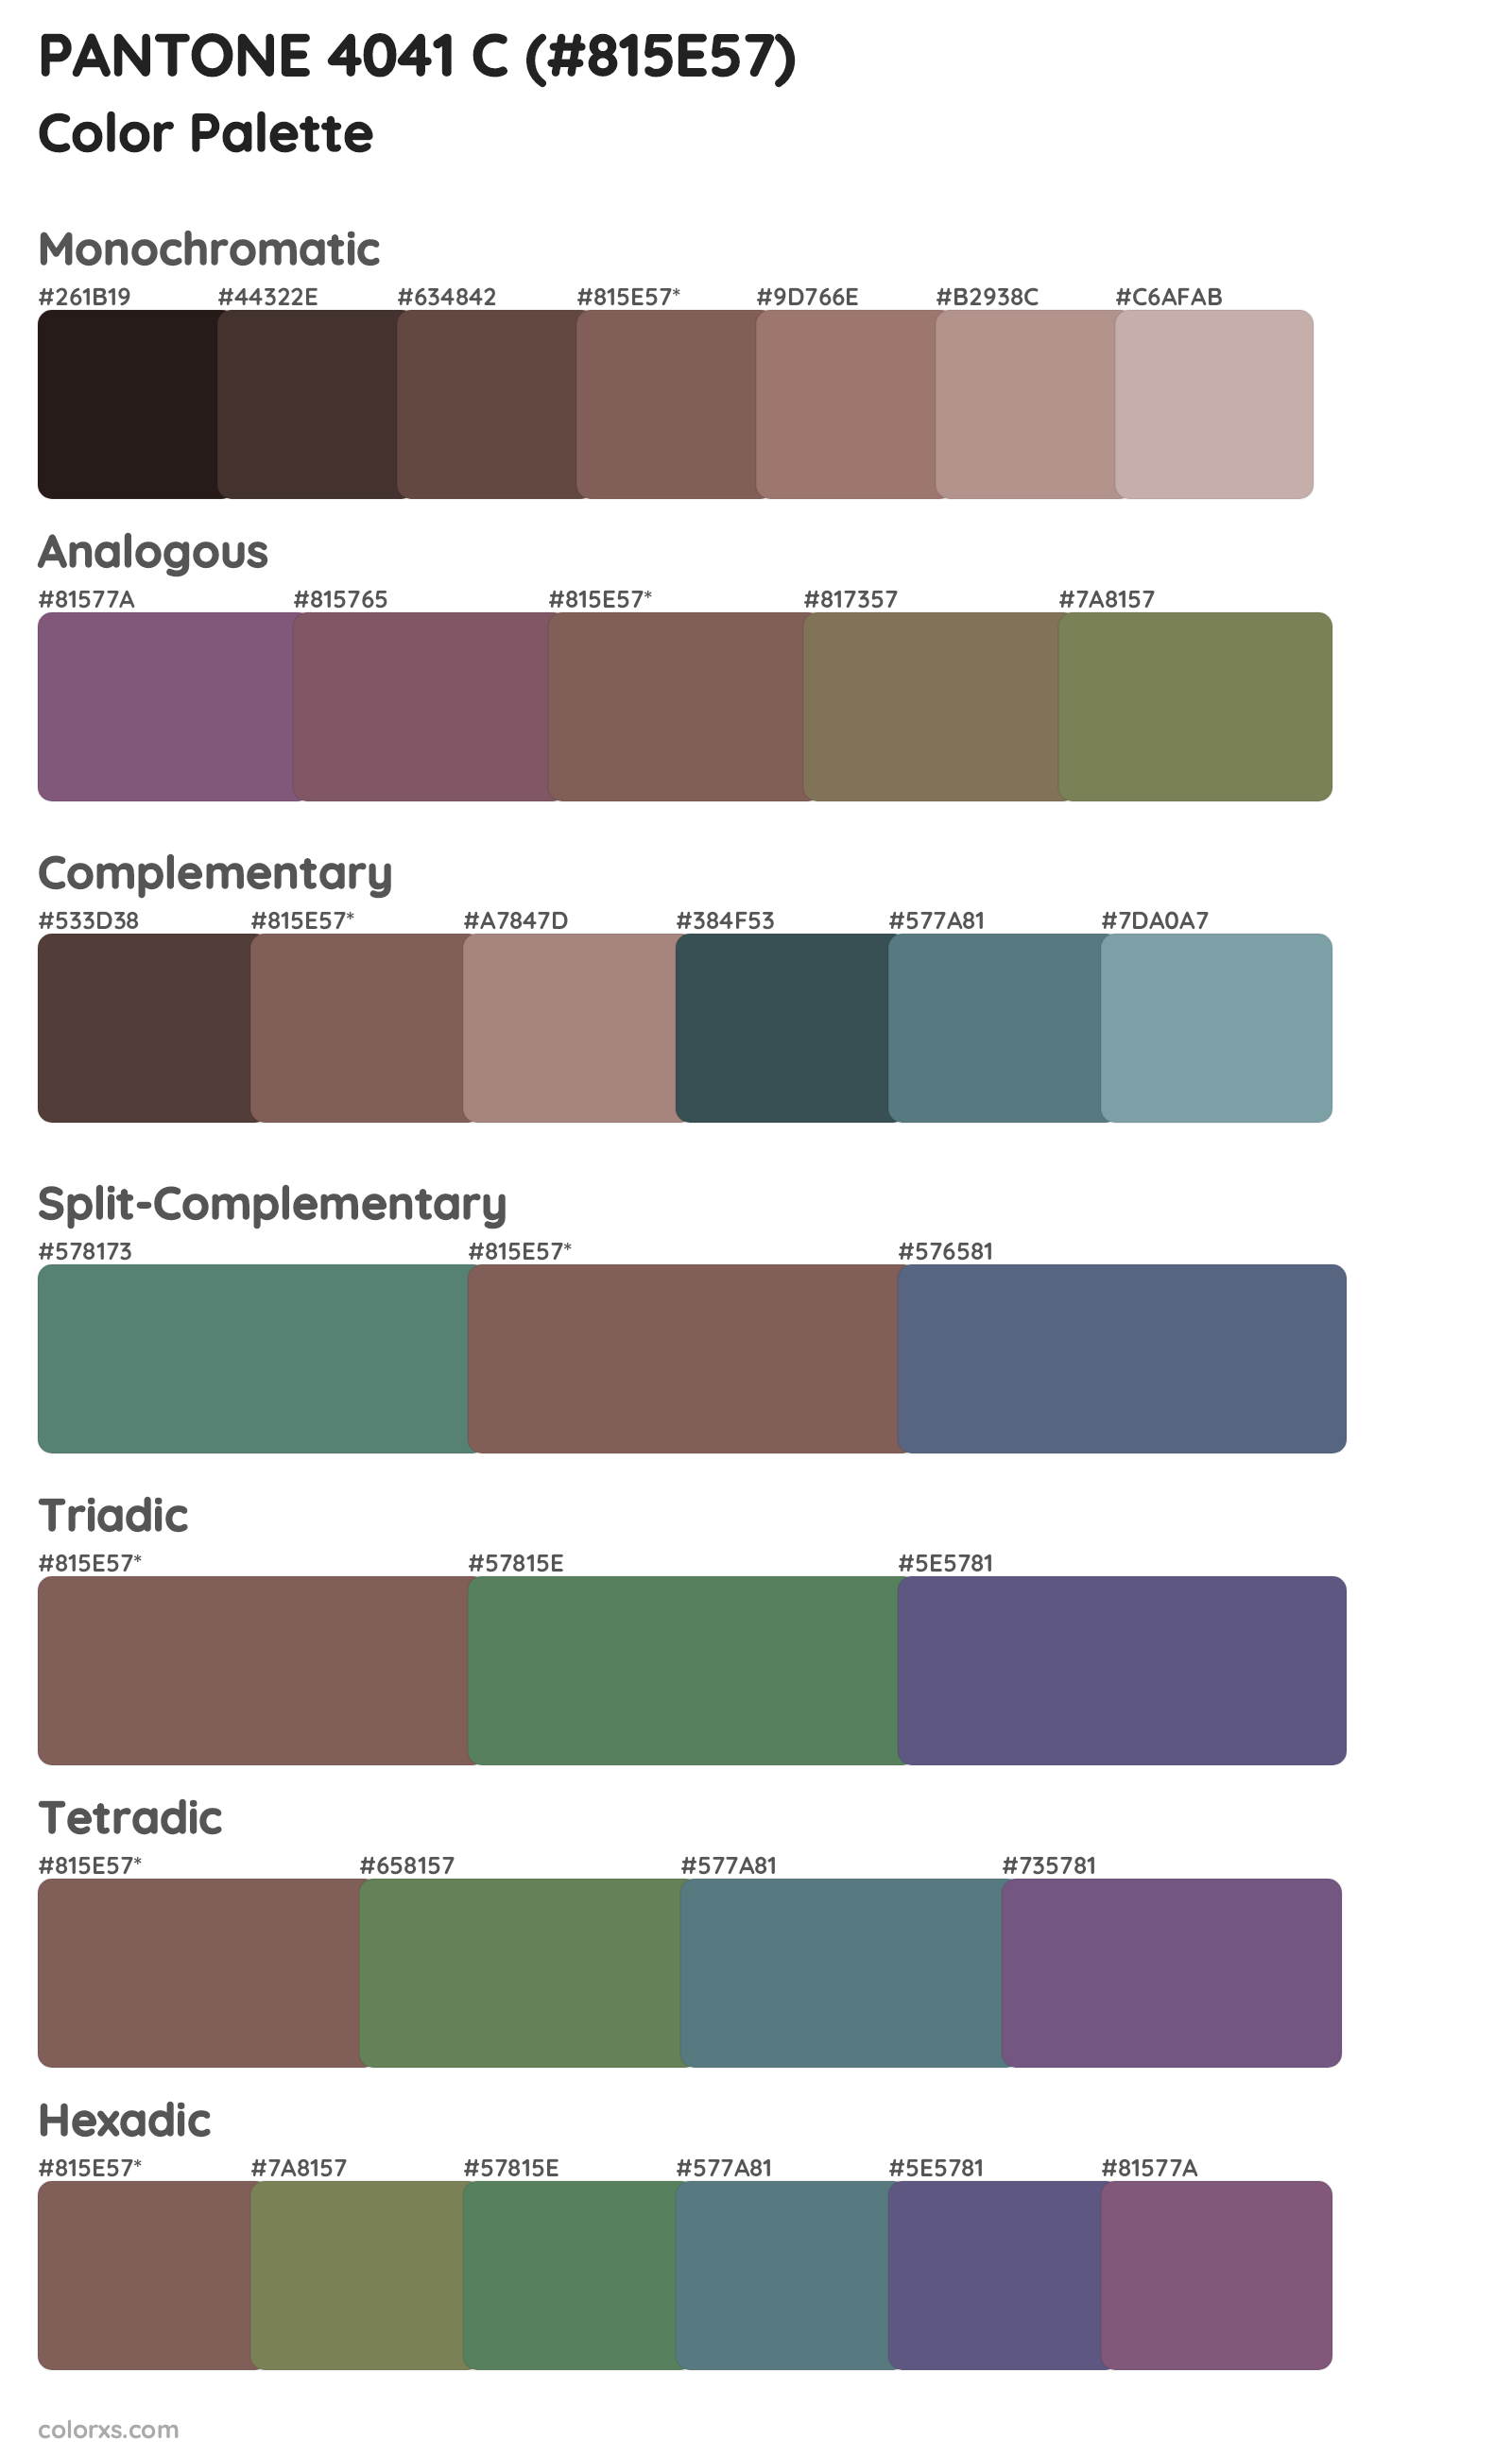 PANTONE 4041 C Color Scheme Palettes